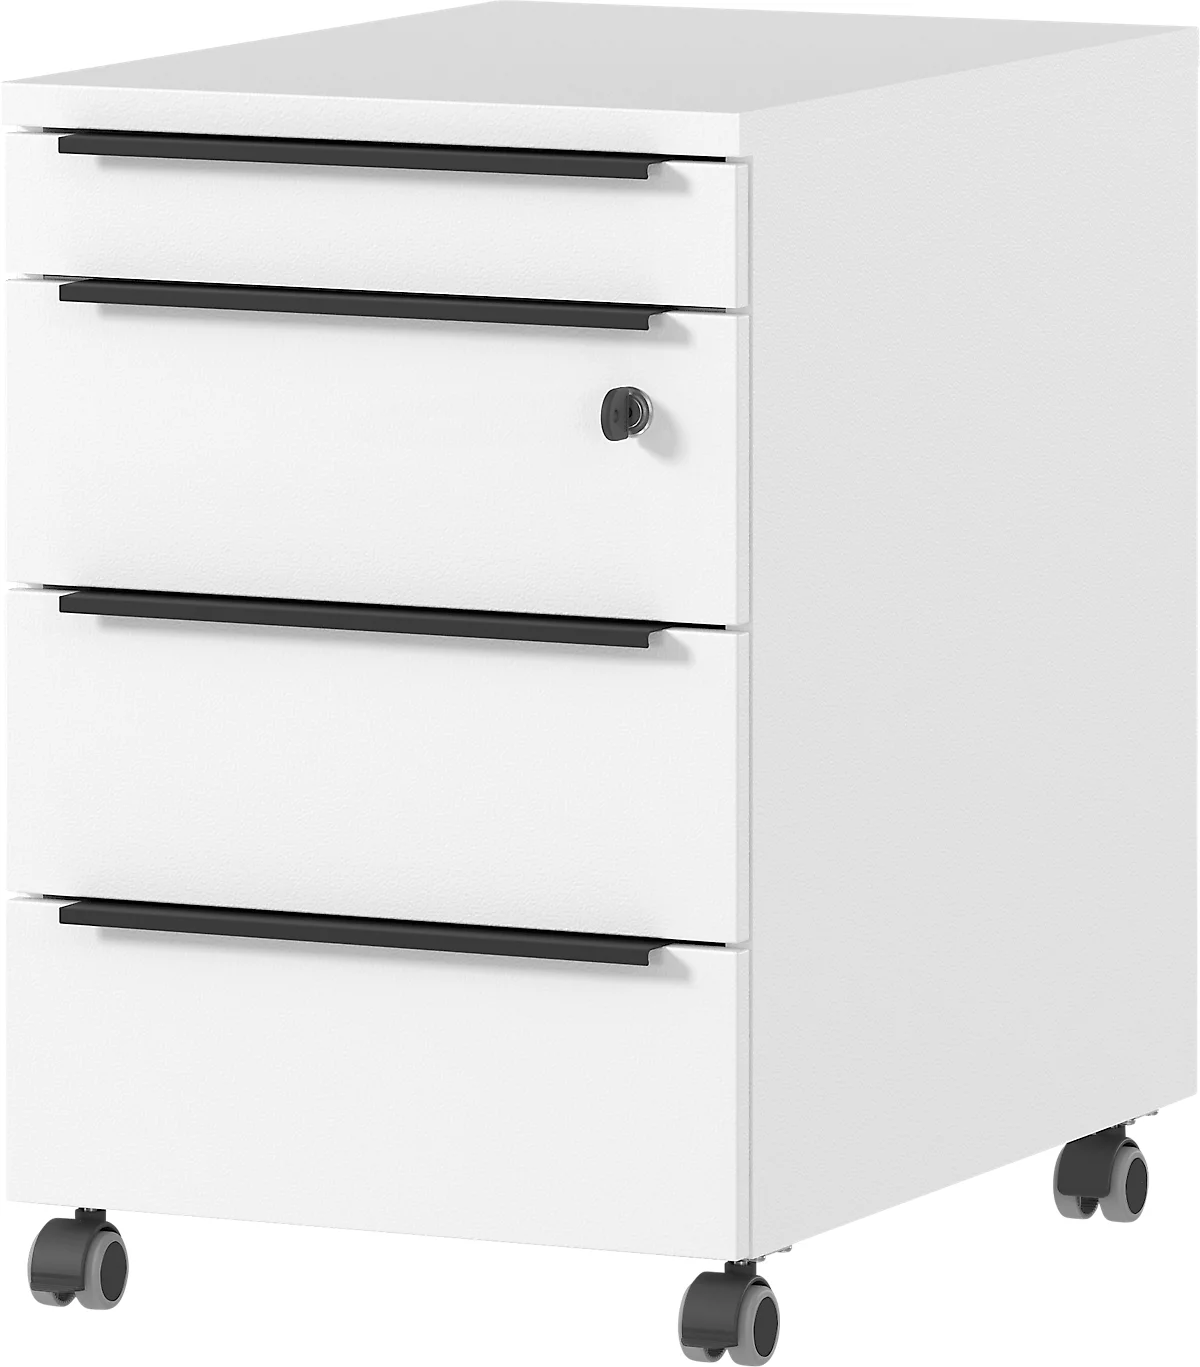 Rollcontainer Porto, 4 Schubladen inkl. Utensilienfach und 1 abschließbaren Schublade, B 420 x T 600 x H 630 mm, weiß